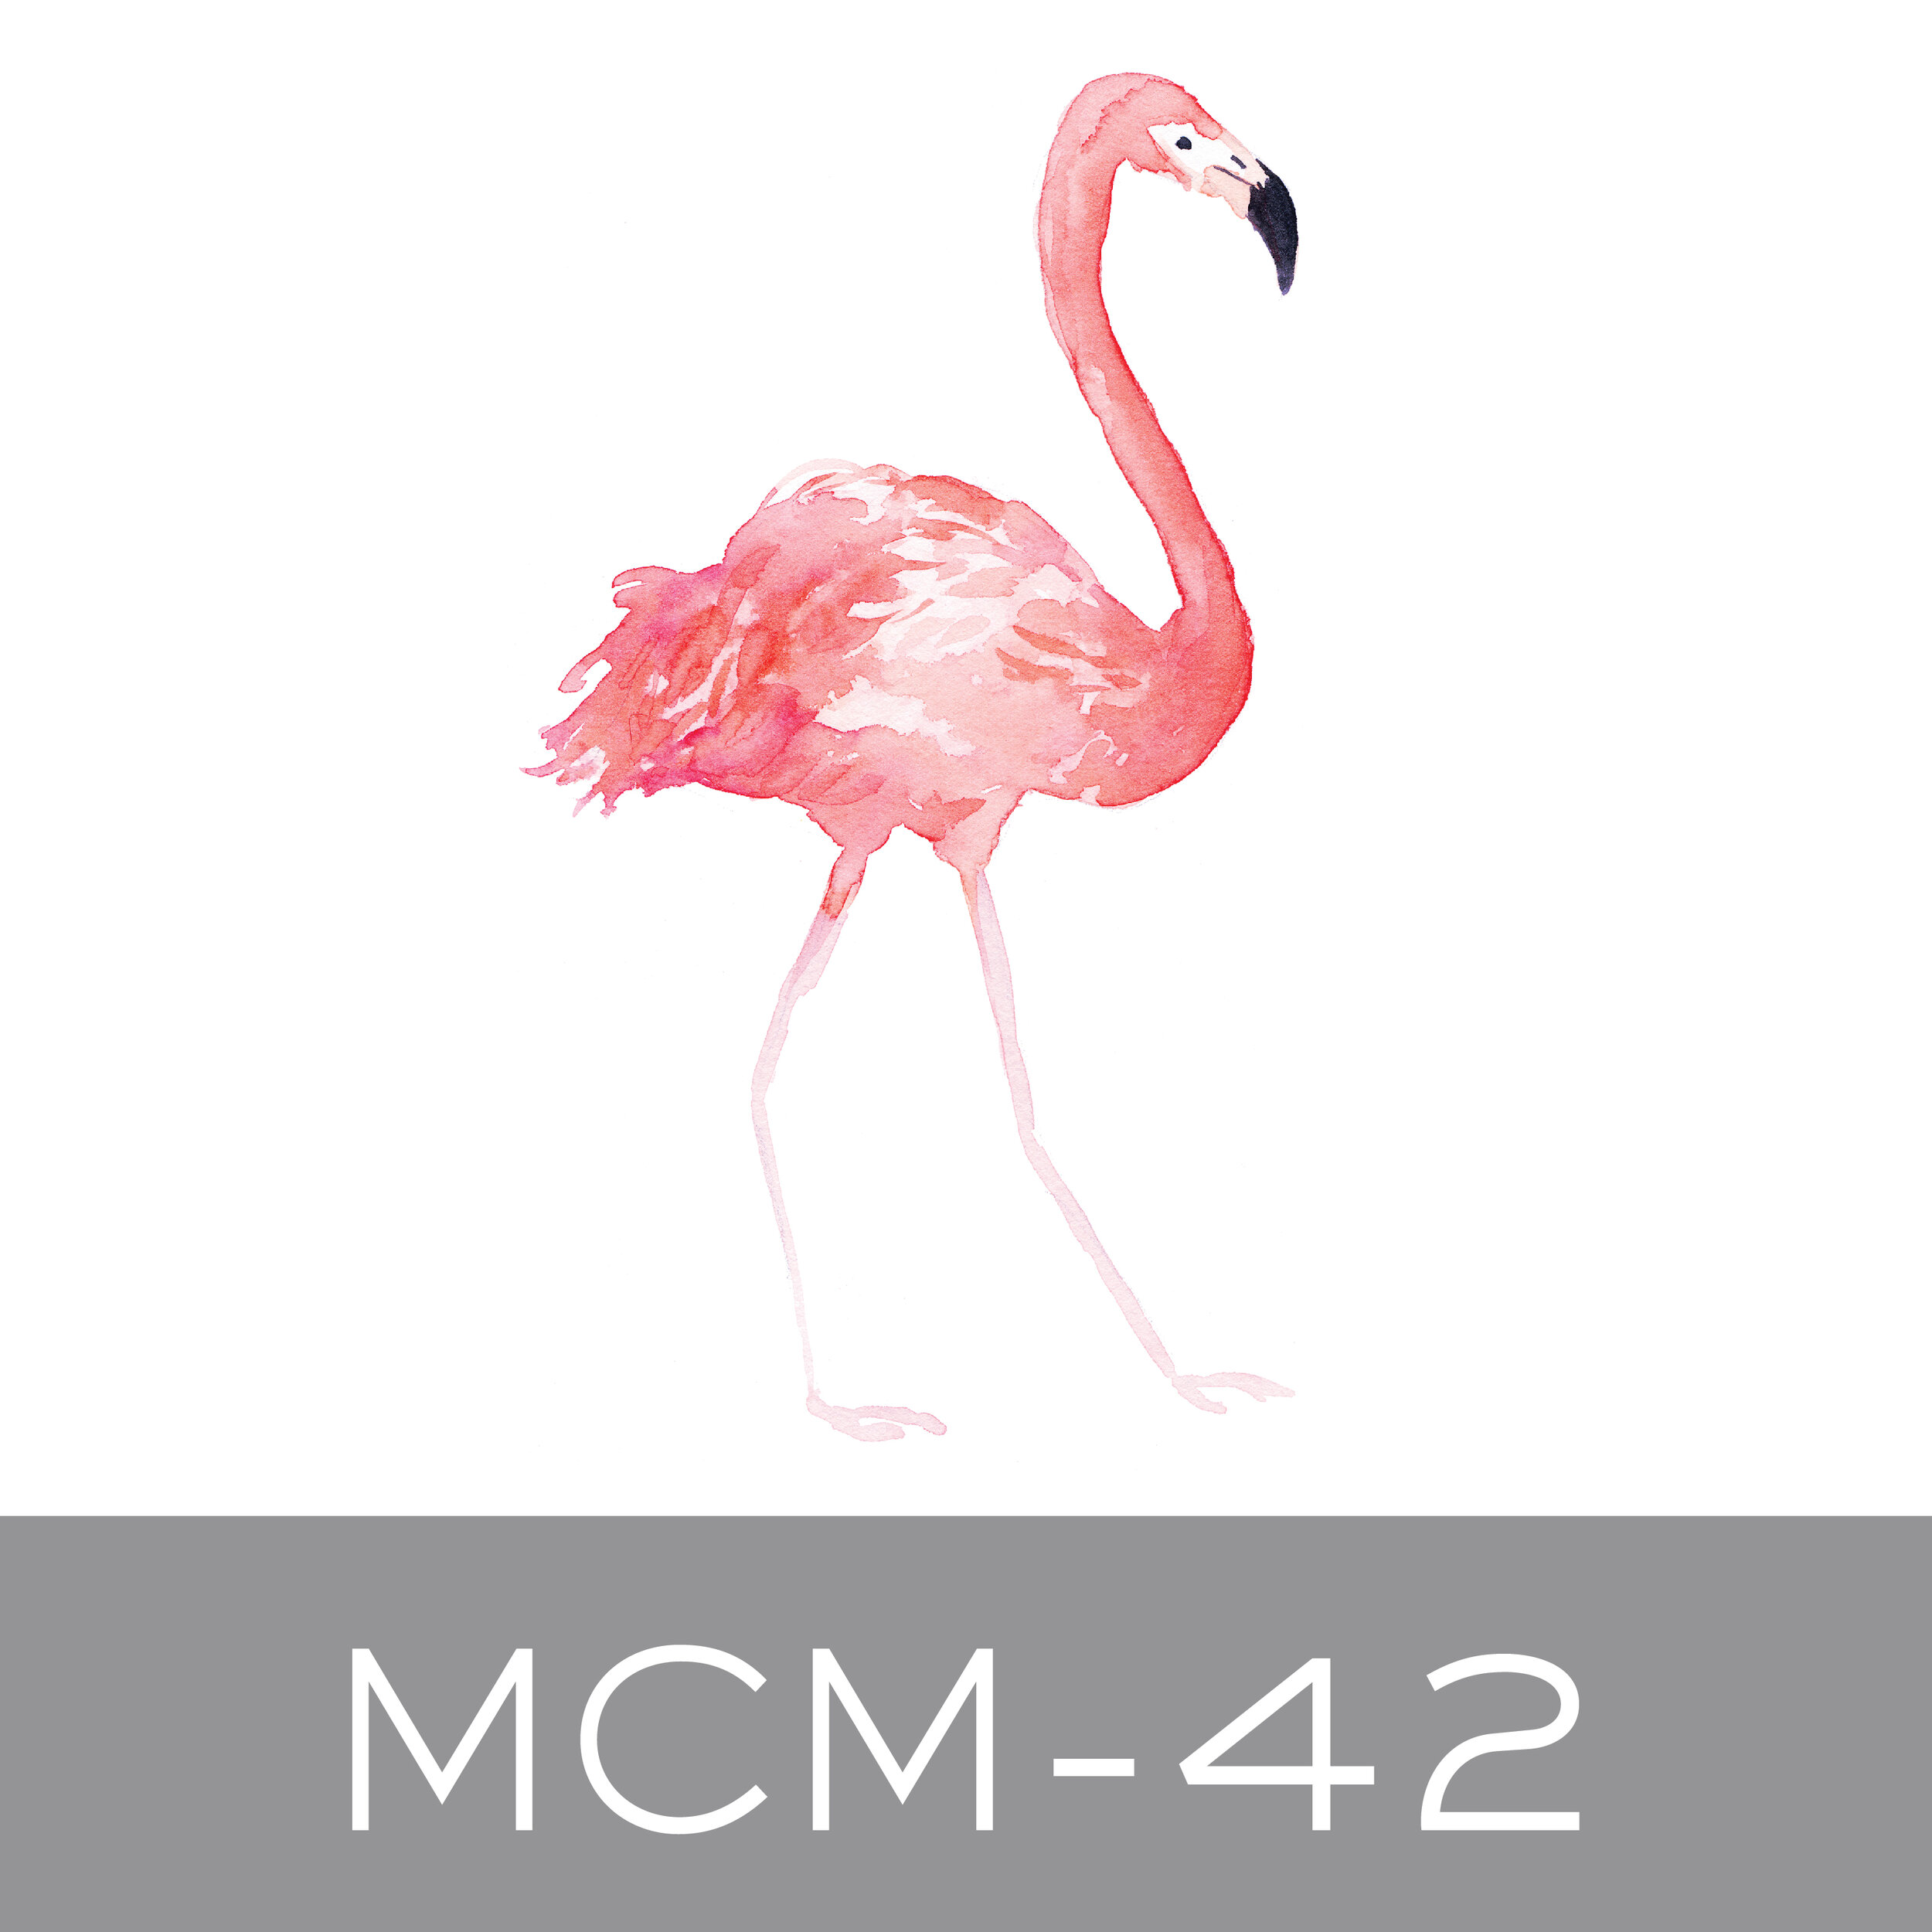 MCM-42.jpg